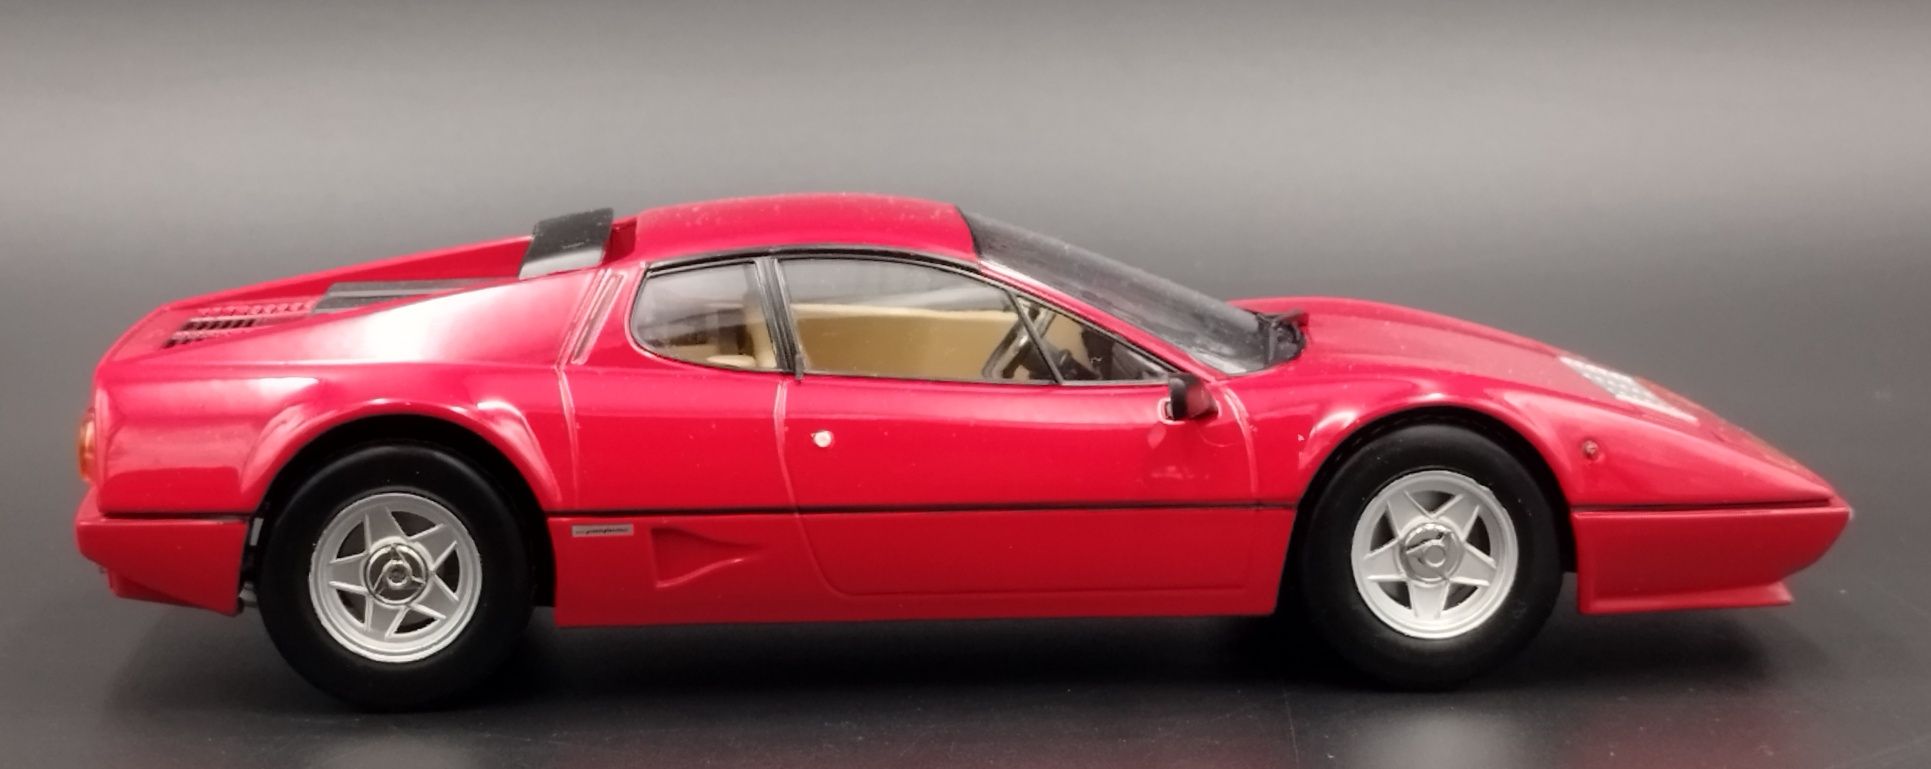 1:18  K&K  Scale 1981 Ferrari 512BBi Model Nowy